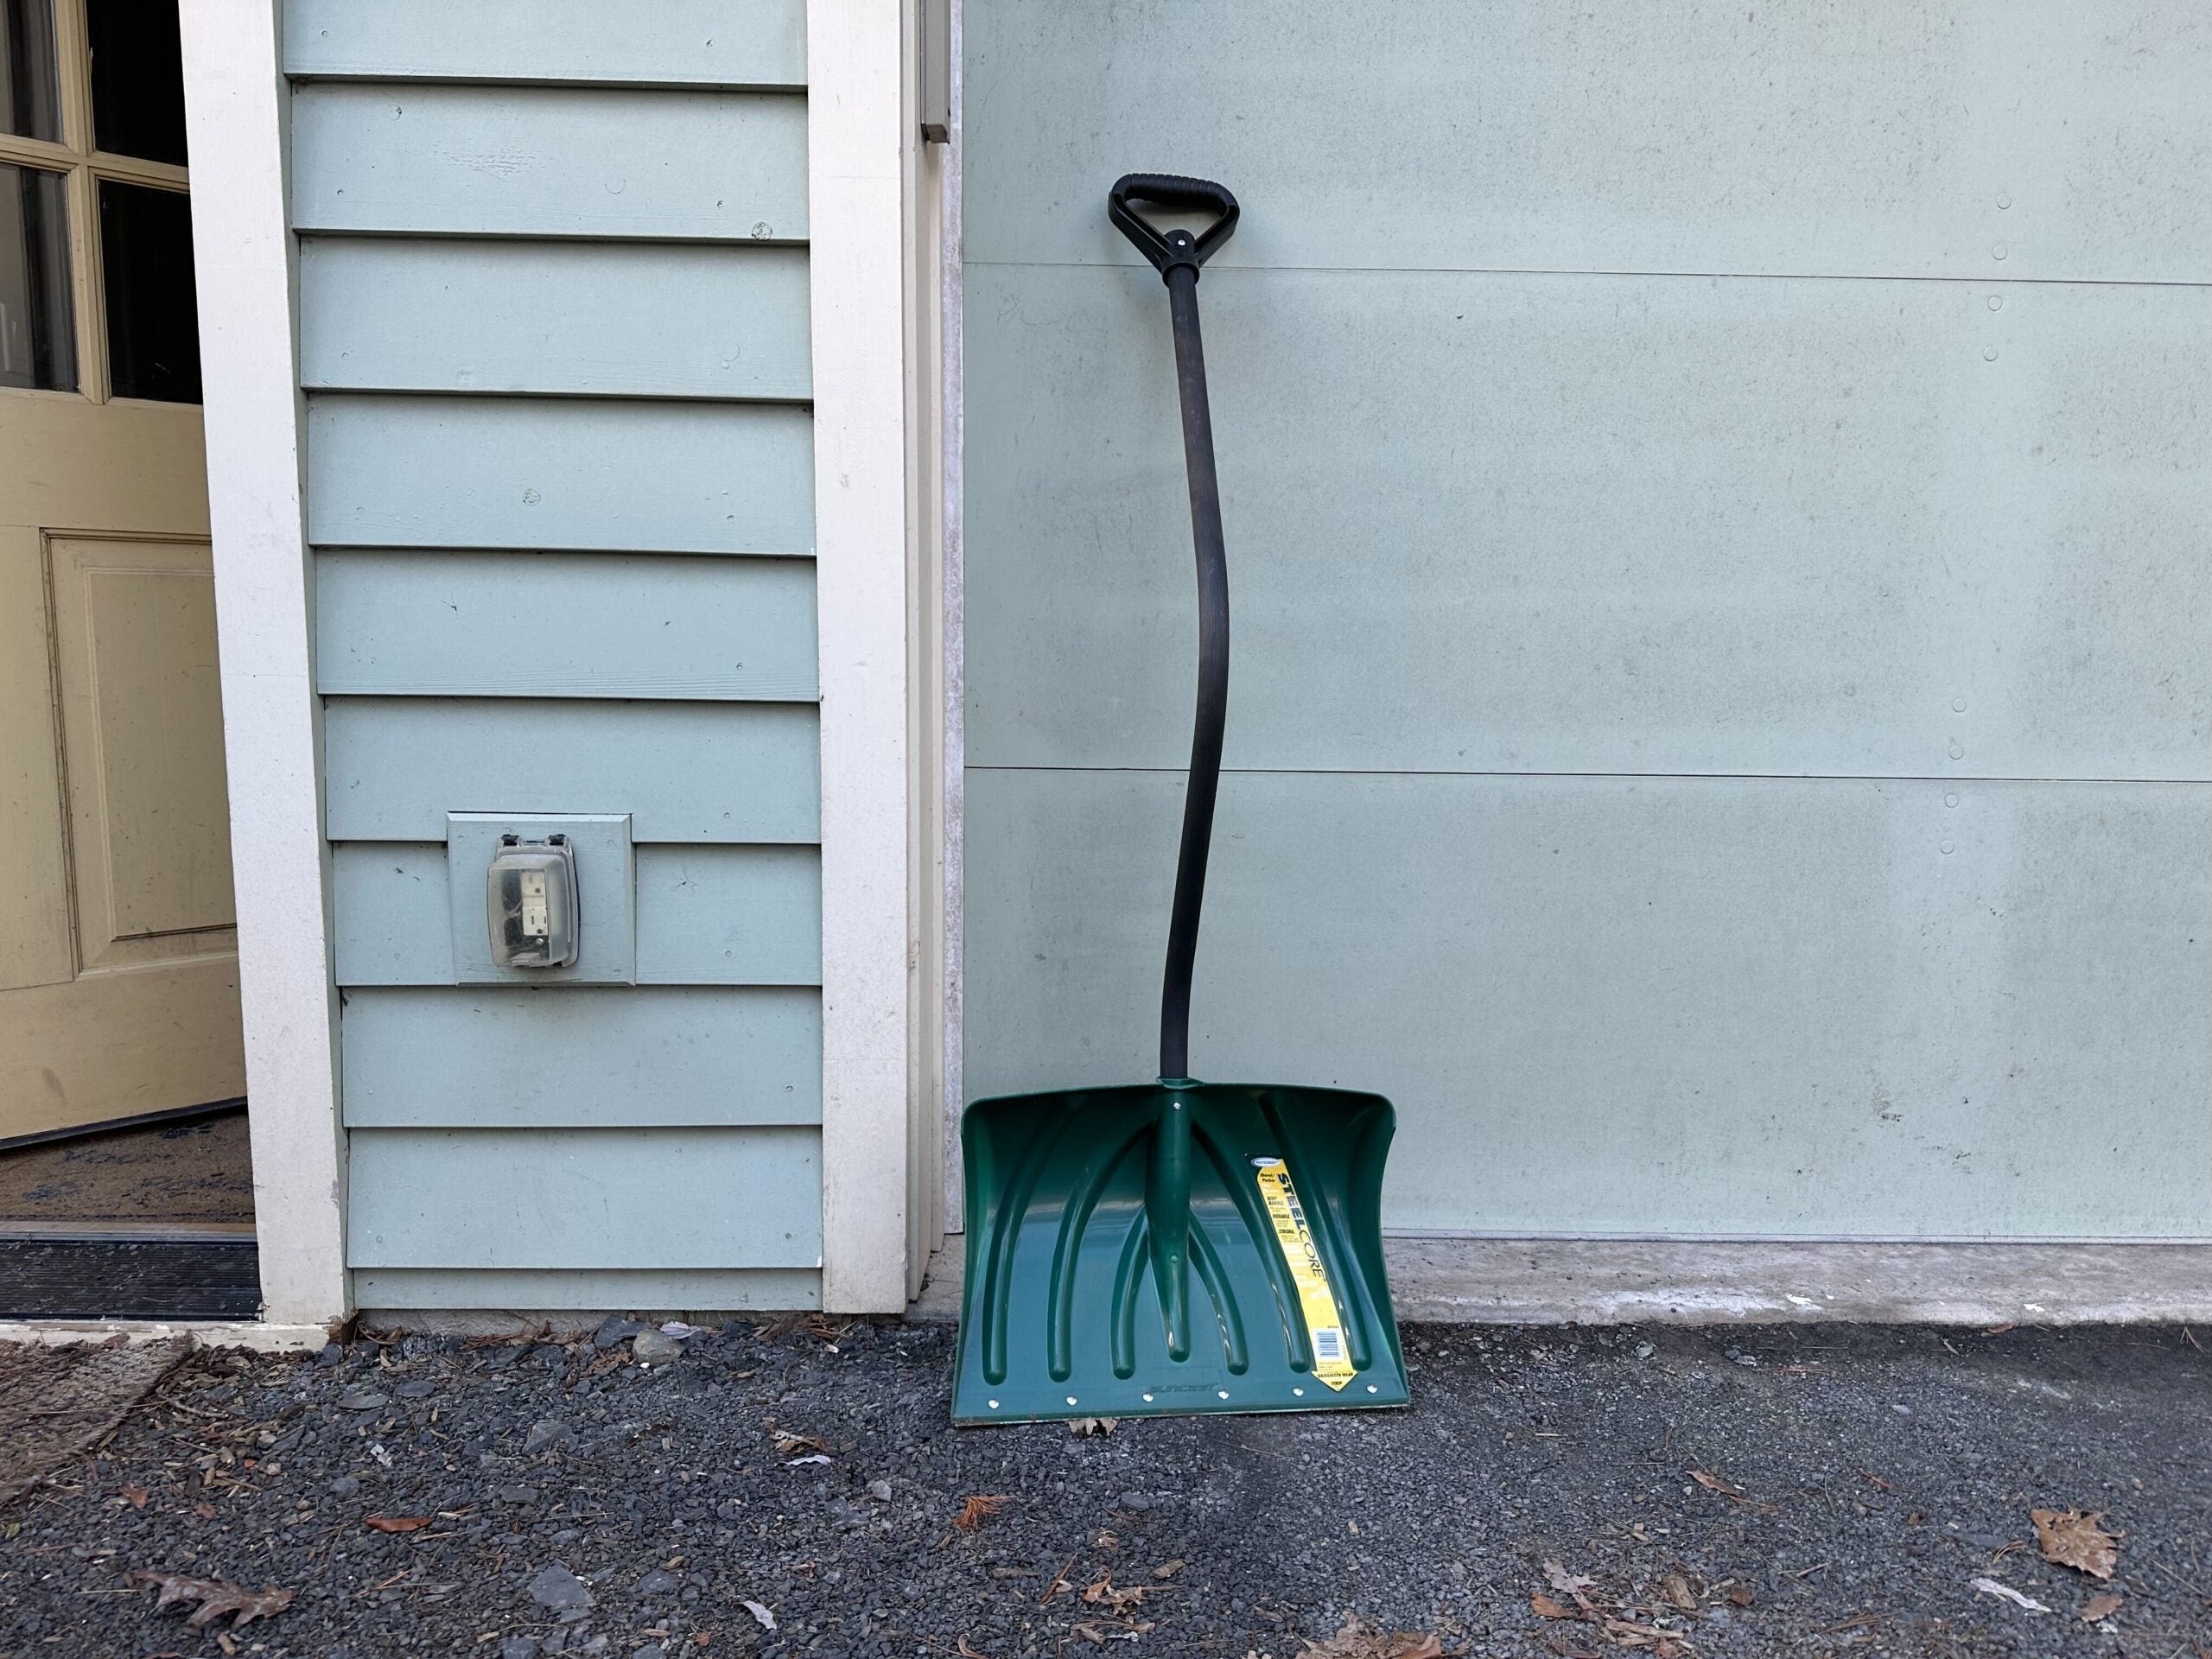 This green Suncast snow shovel is the best ergonomic snow shovel